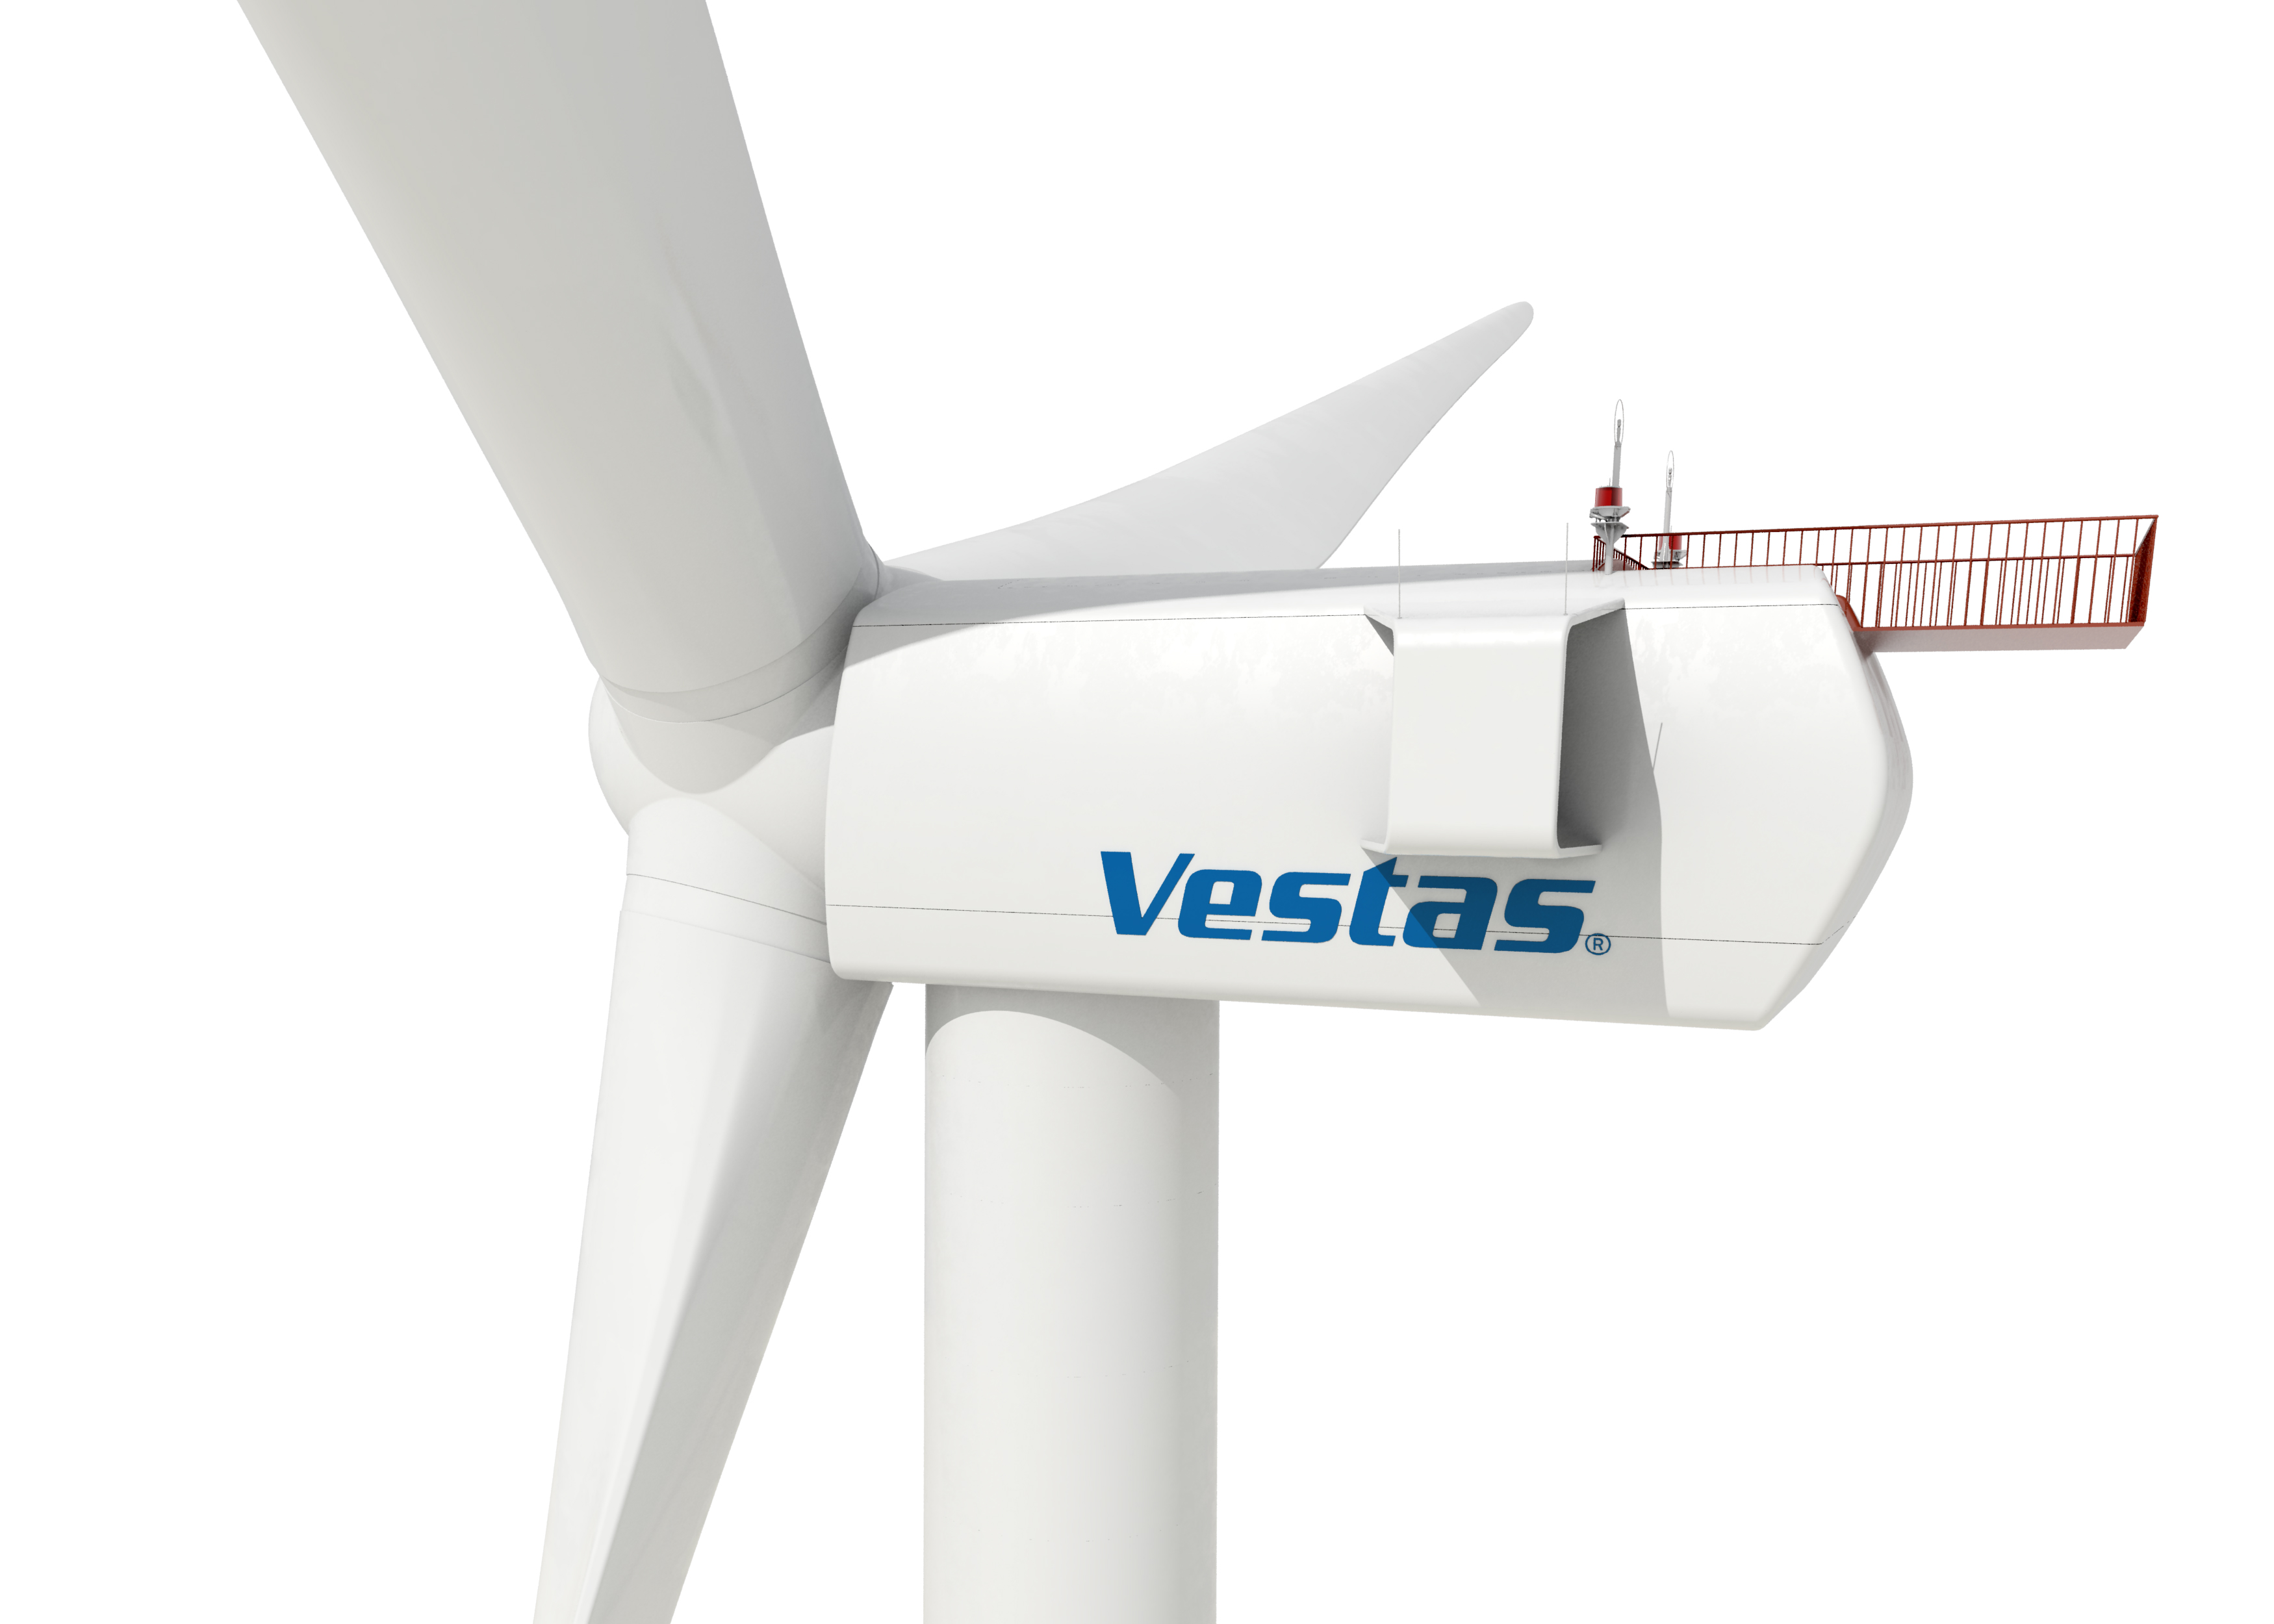 La eólica Vestas recorta 800 empleos en EE UU por la incertidumbre regulatoria del sector eólico